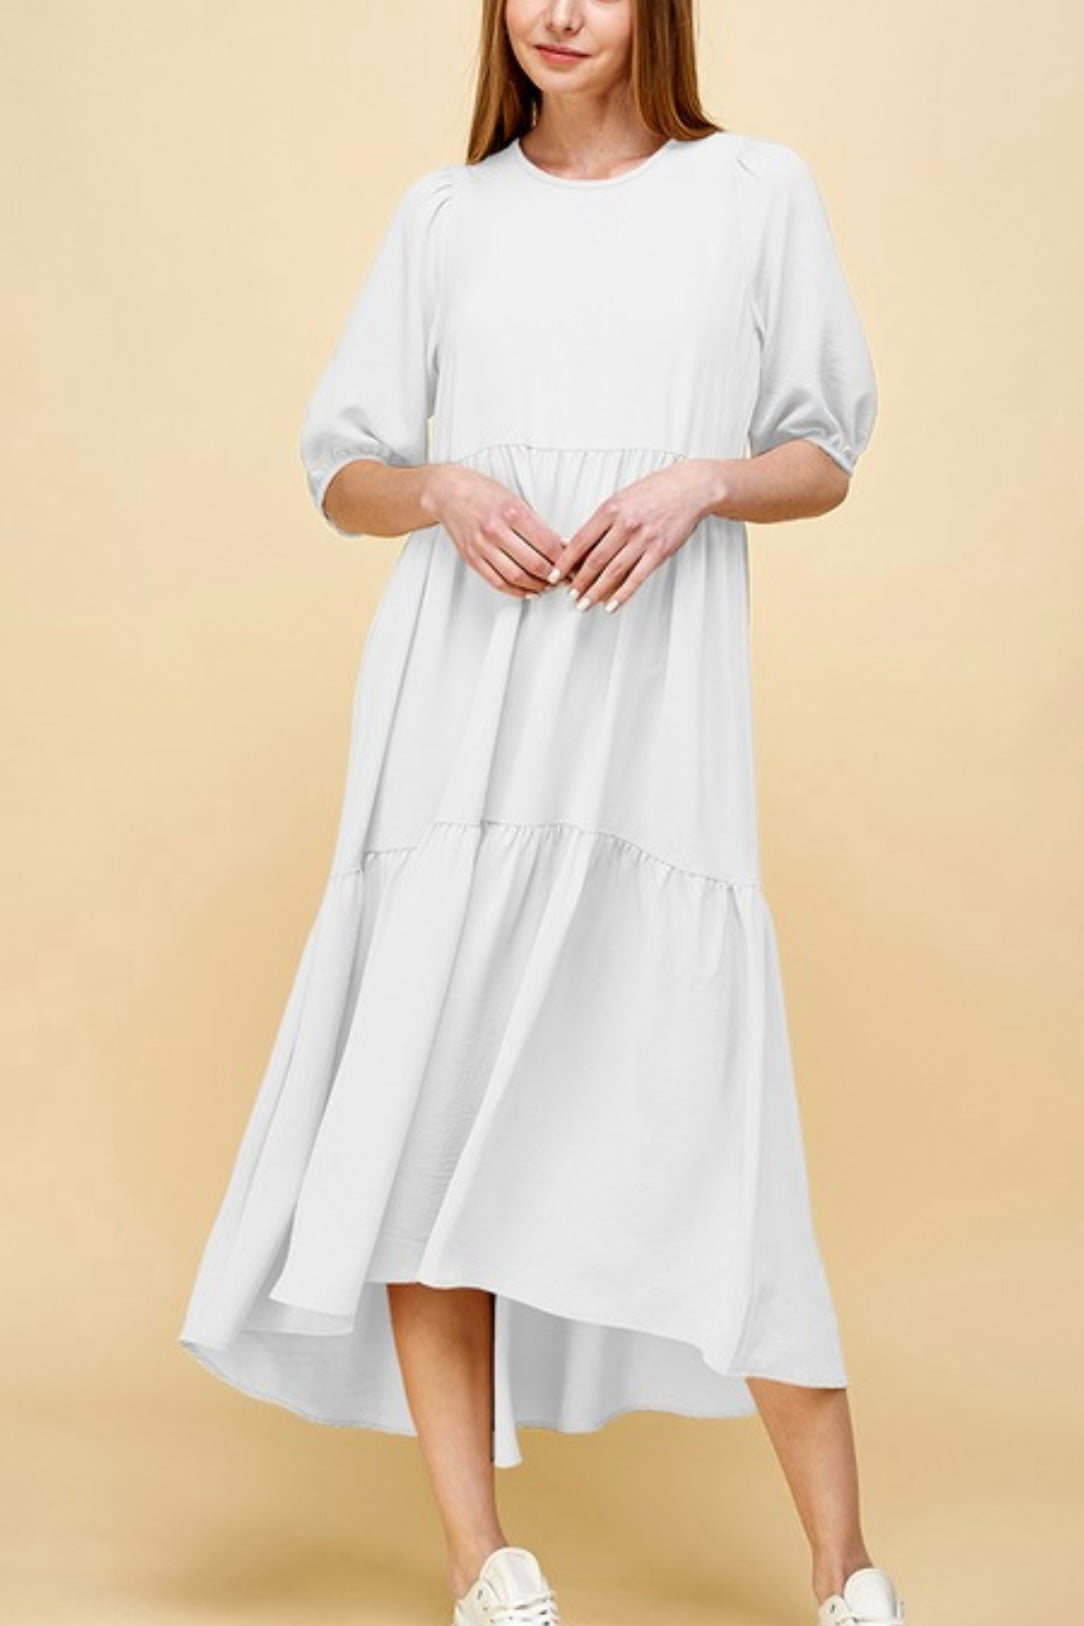 Flowy Tiered Dress - Ivory (S-XL)